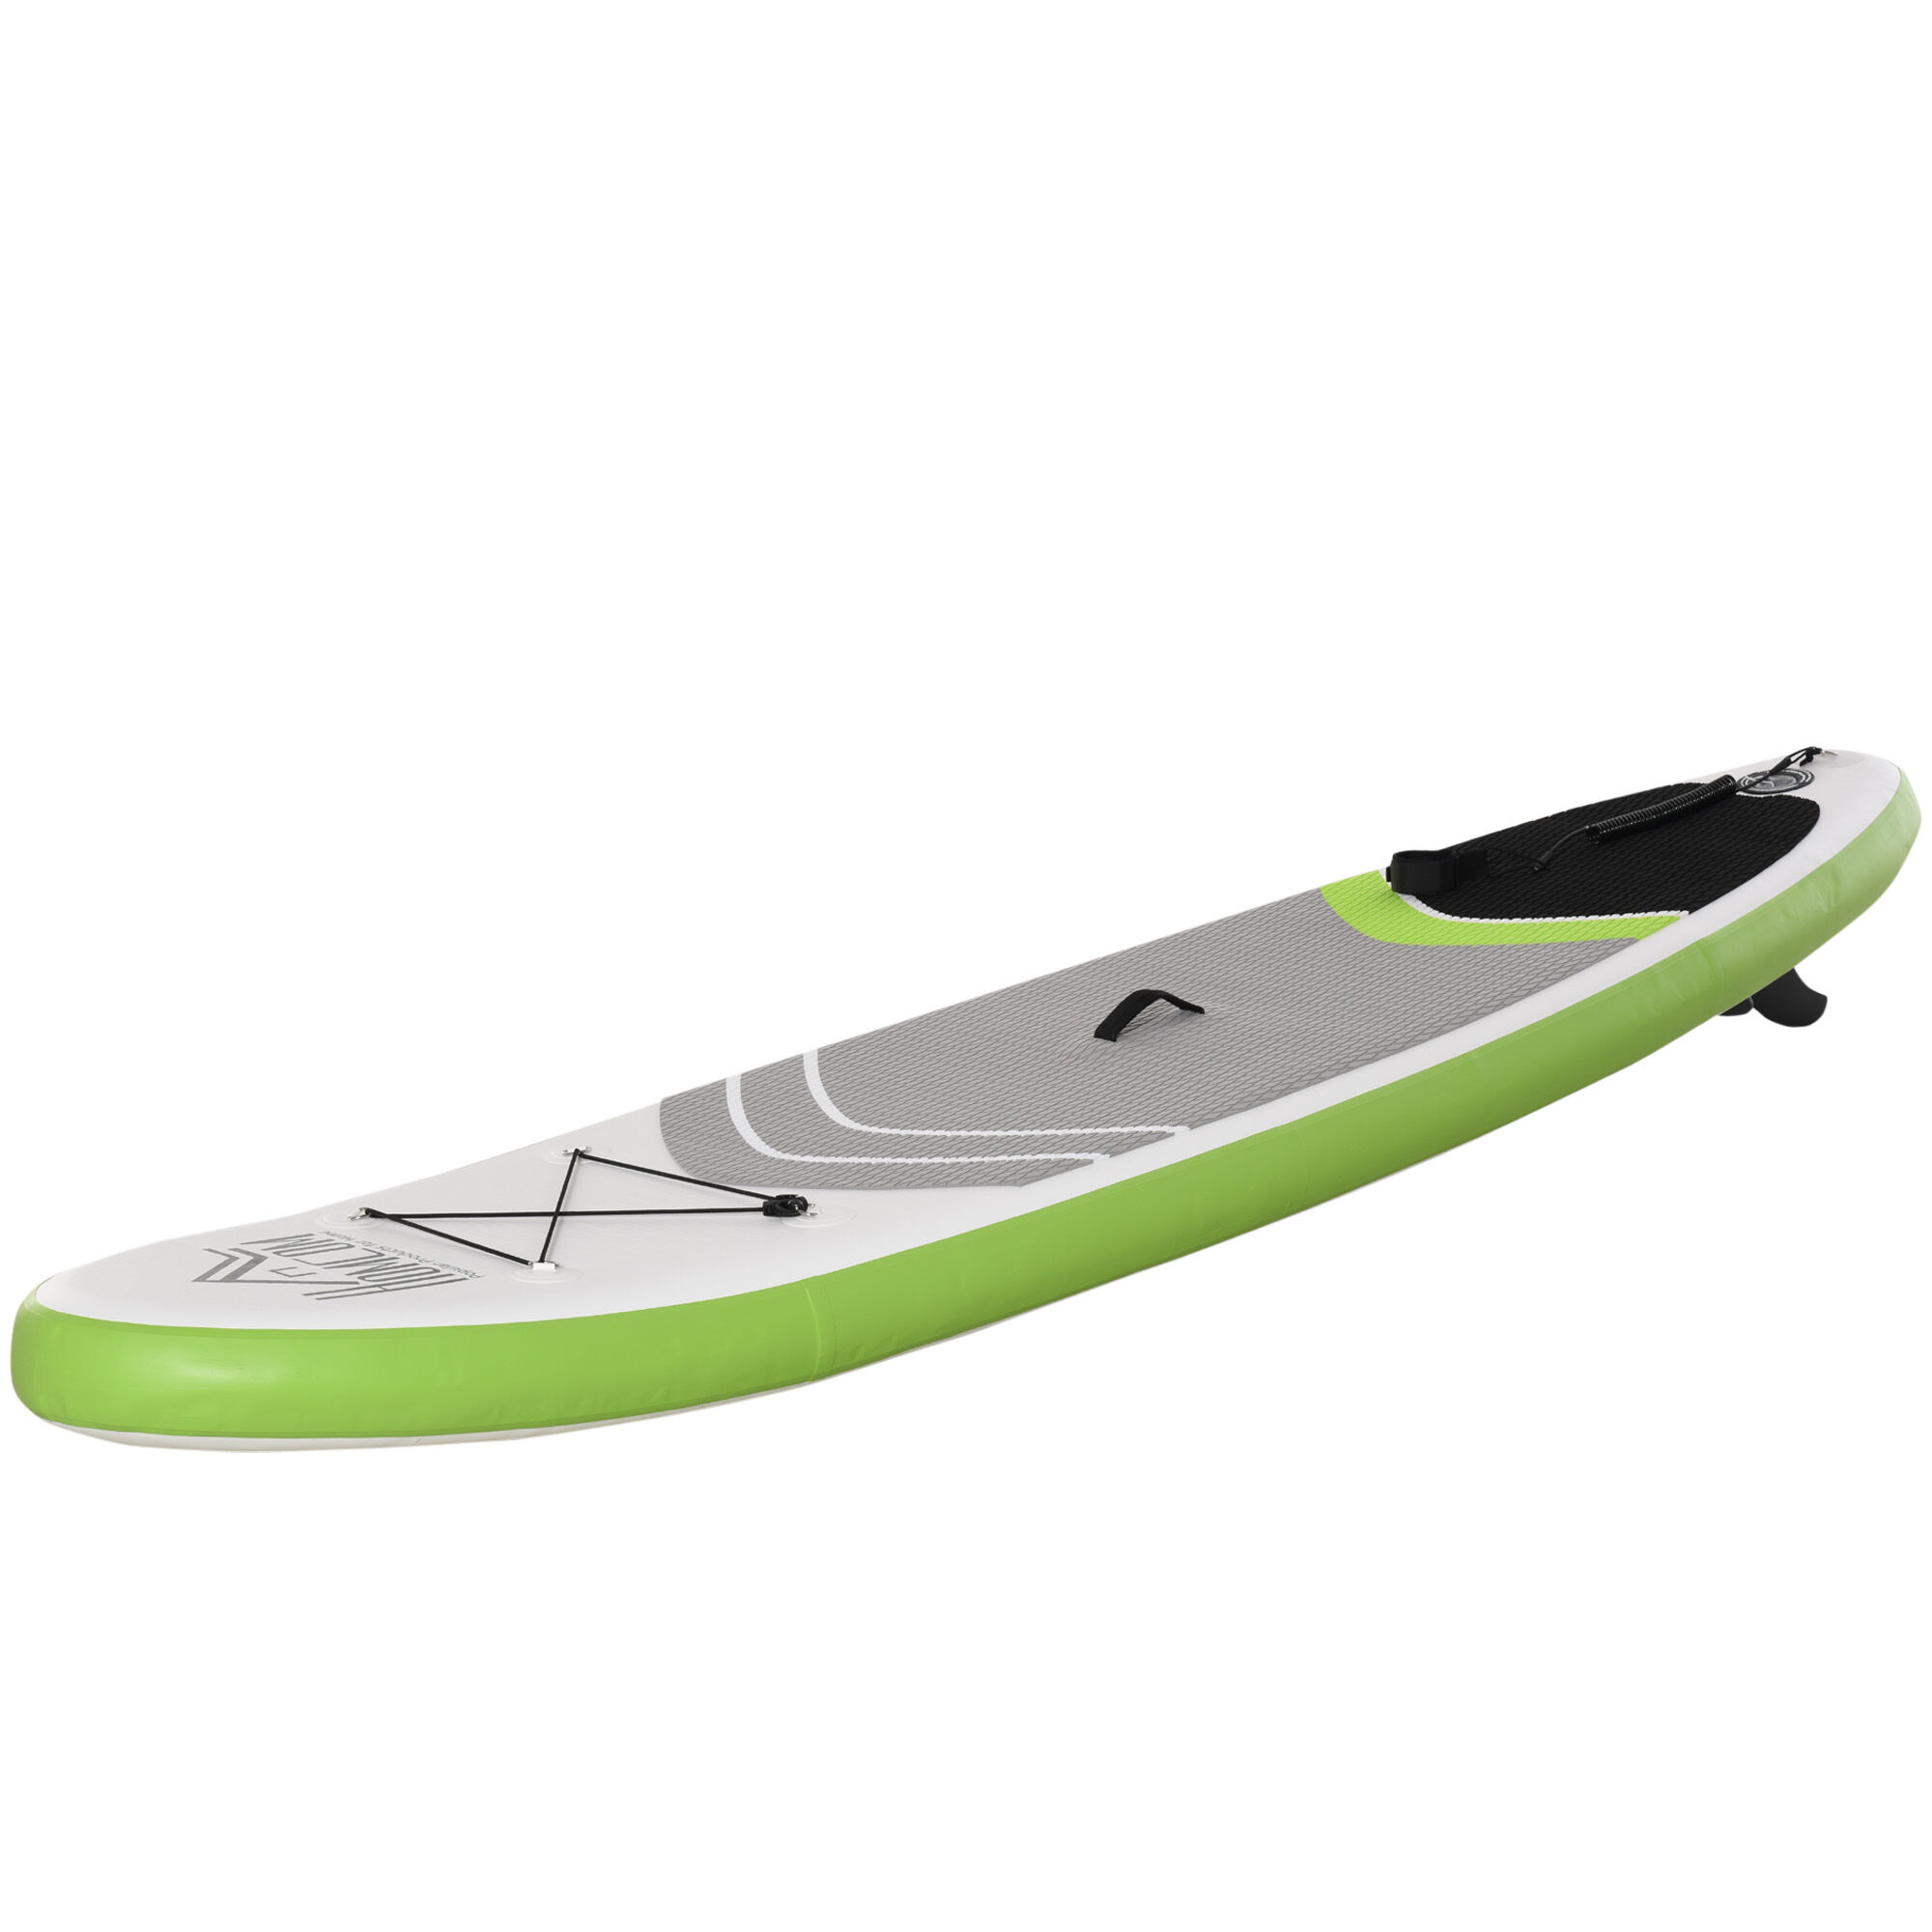 Homcom Tavola SUP Gonfiabile con Accessori Inclusi, Stand Up Paddle per Adulti e Teenager, 305x80x15cm Verde e Bianco